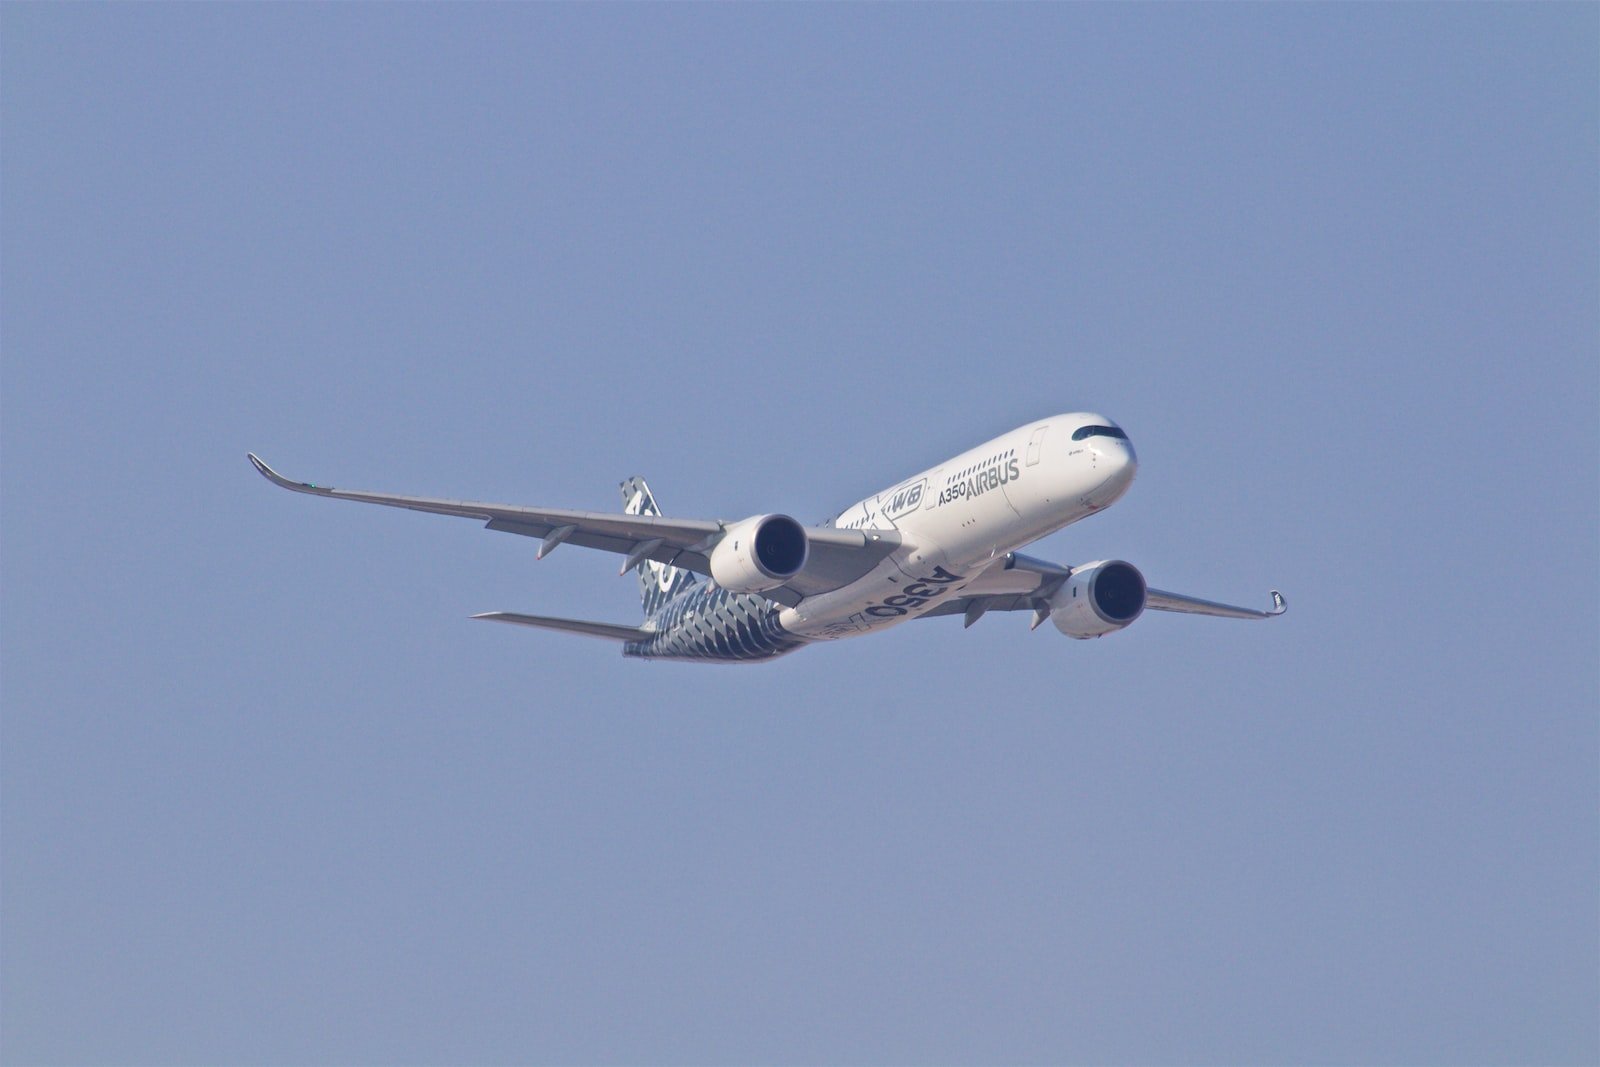 white airplane taking off during daytime